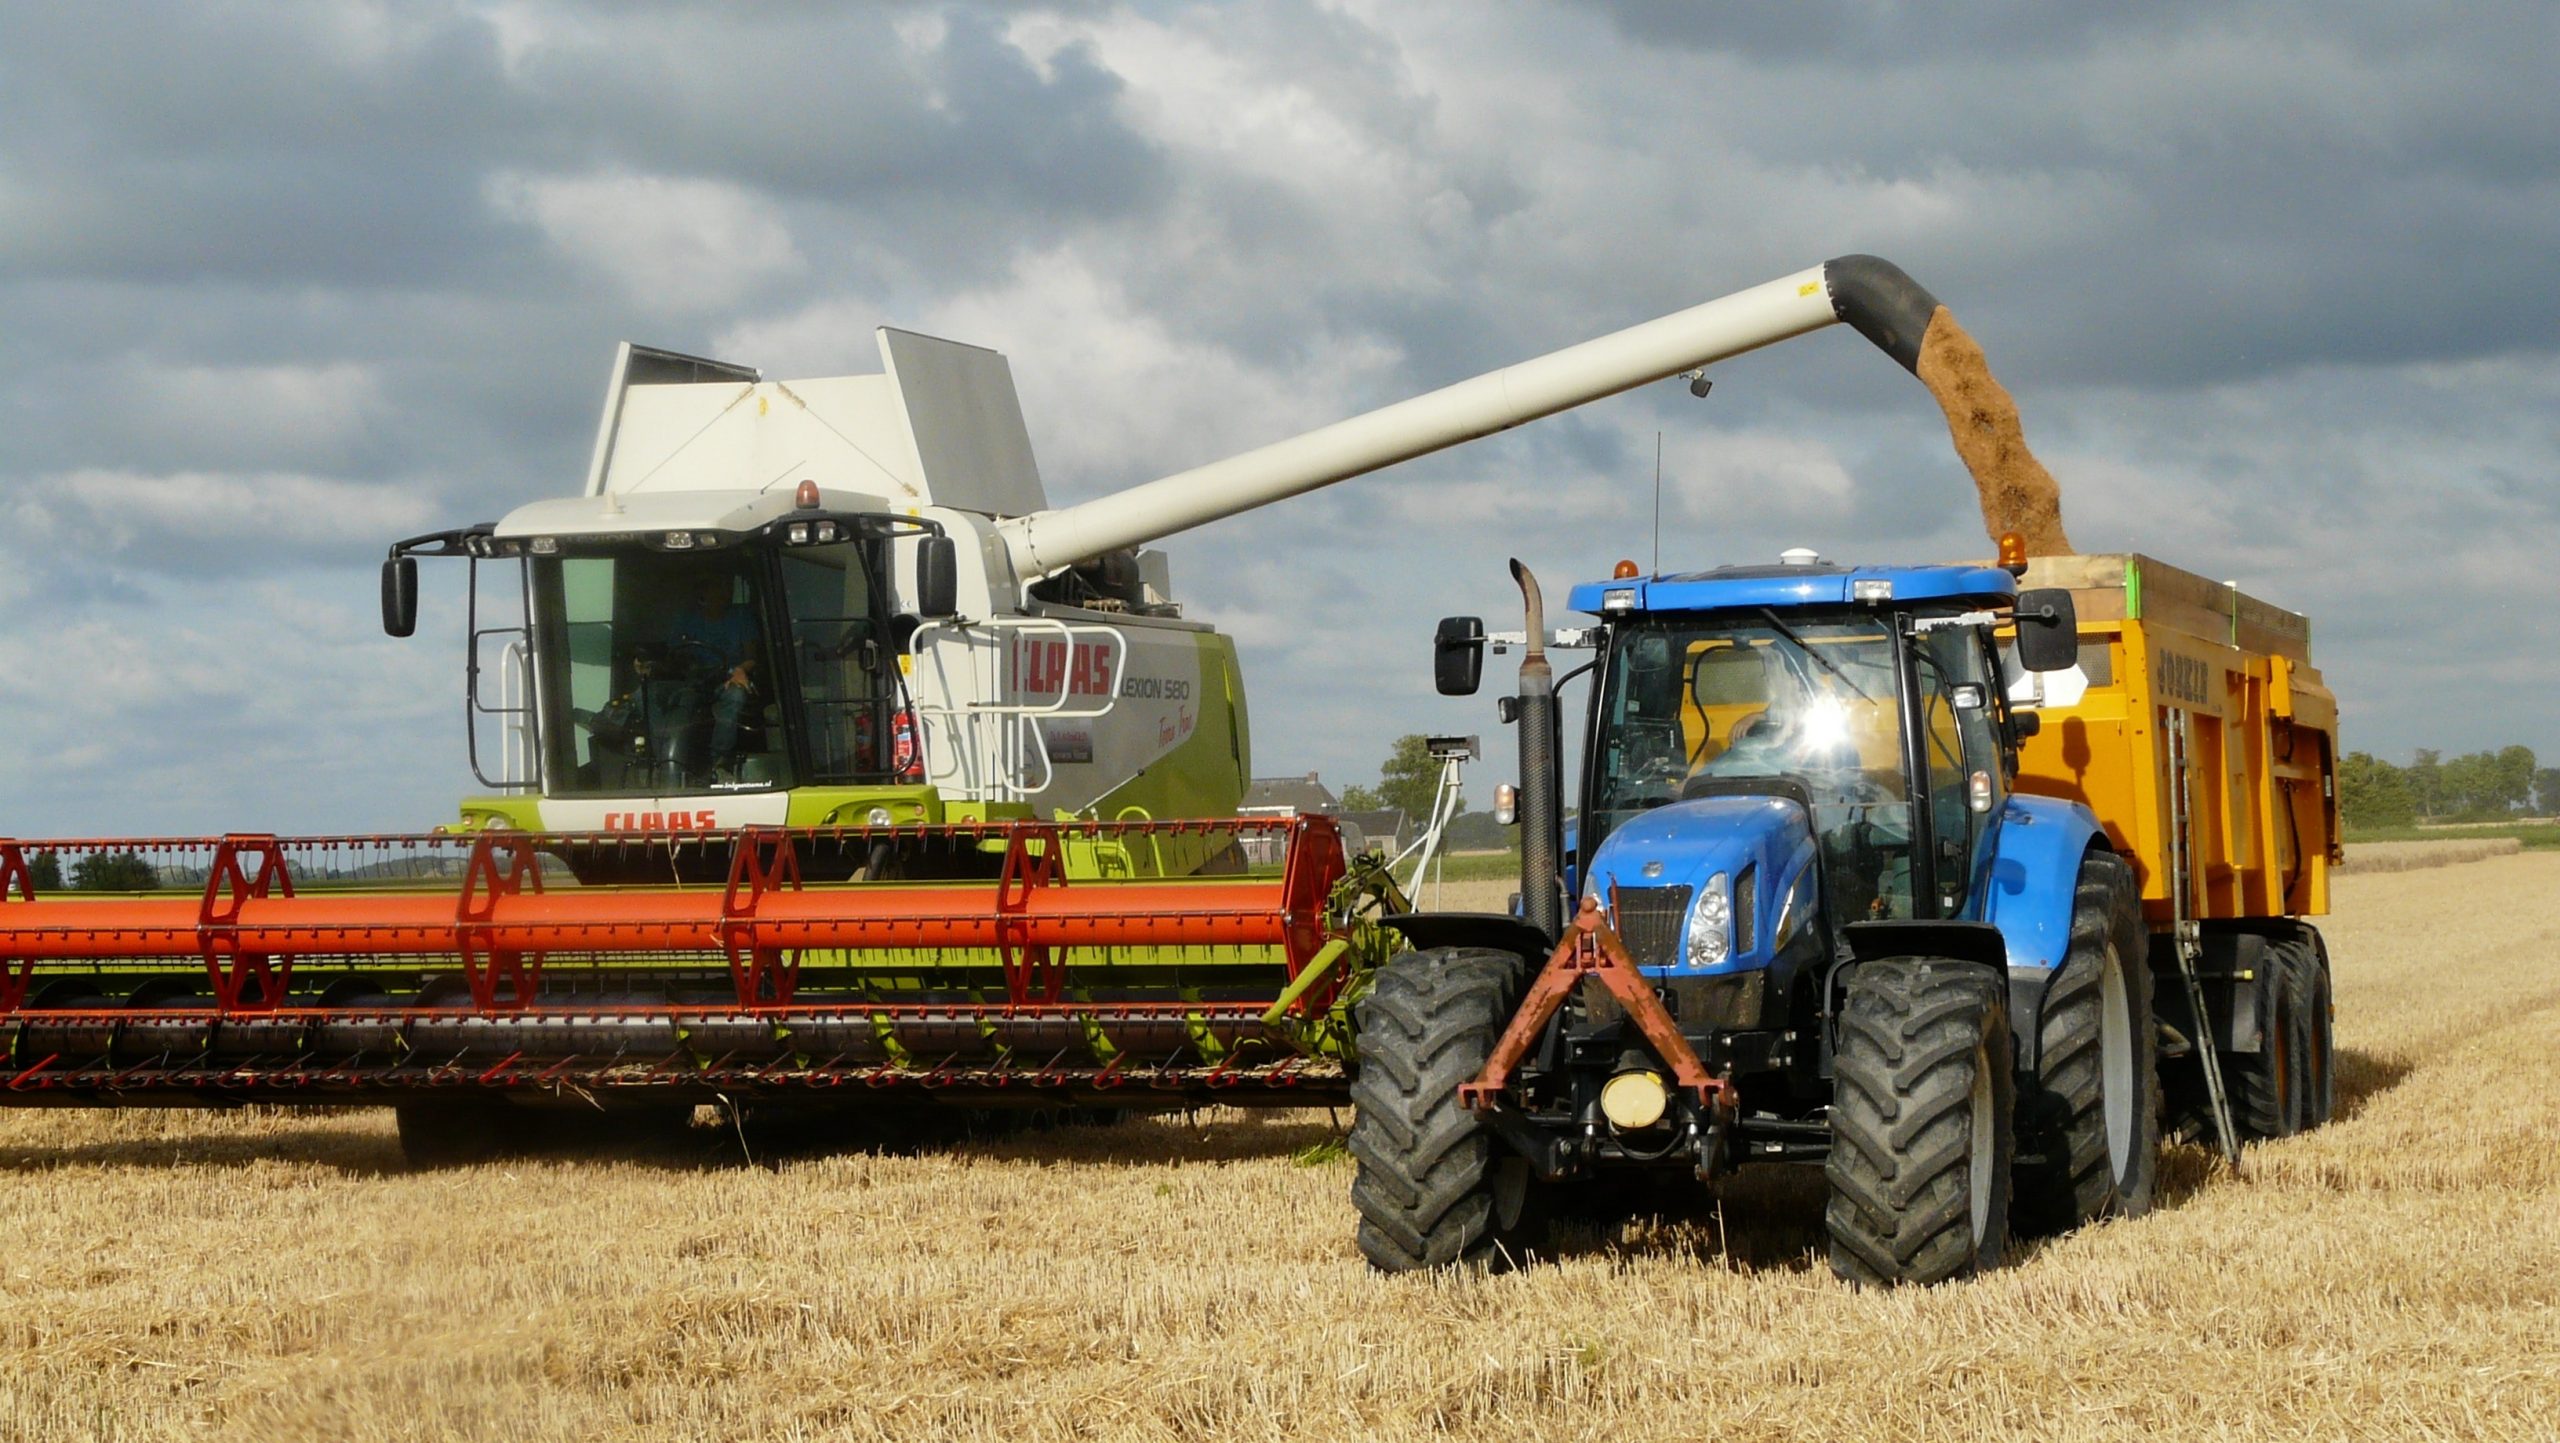 Aufruf zur europäischen Einigkeit, um ukrainisches Getreide zu retten